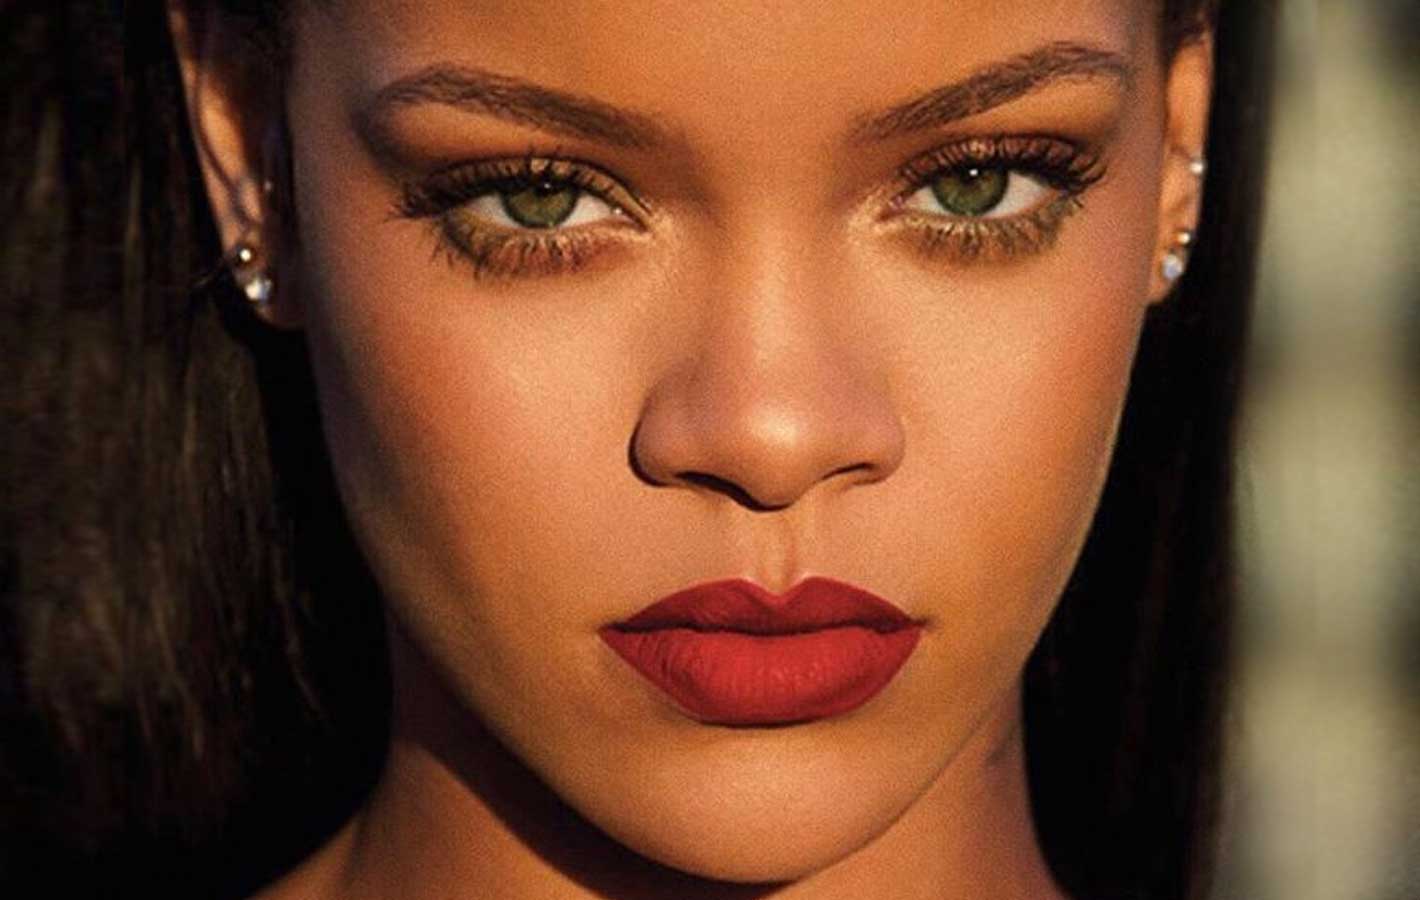 Kochamy ten look: Rihanna na okładce amerykańskiego Elle